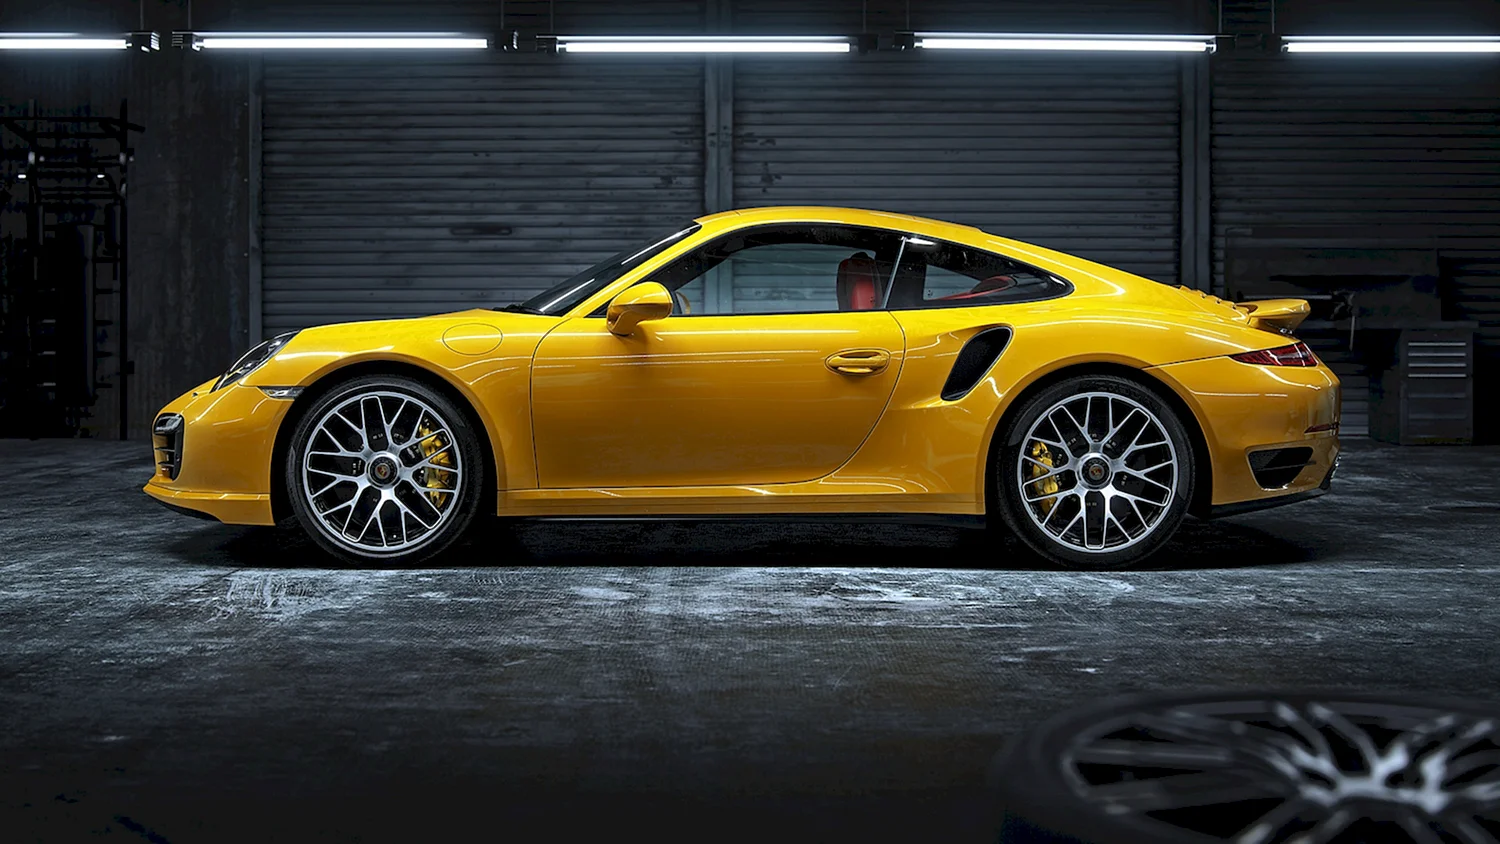 Porsche 911 Turbo s Yellow